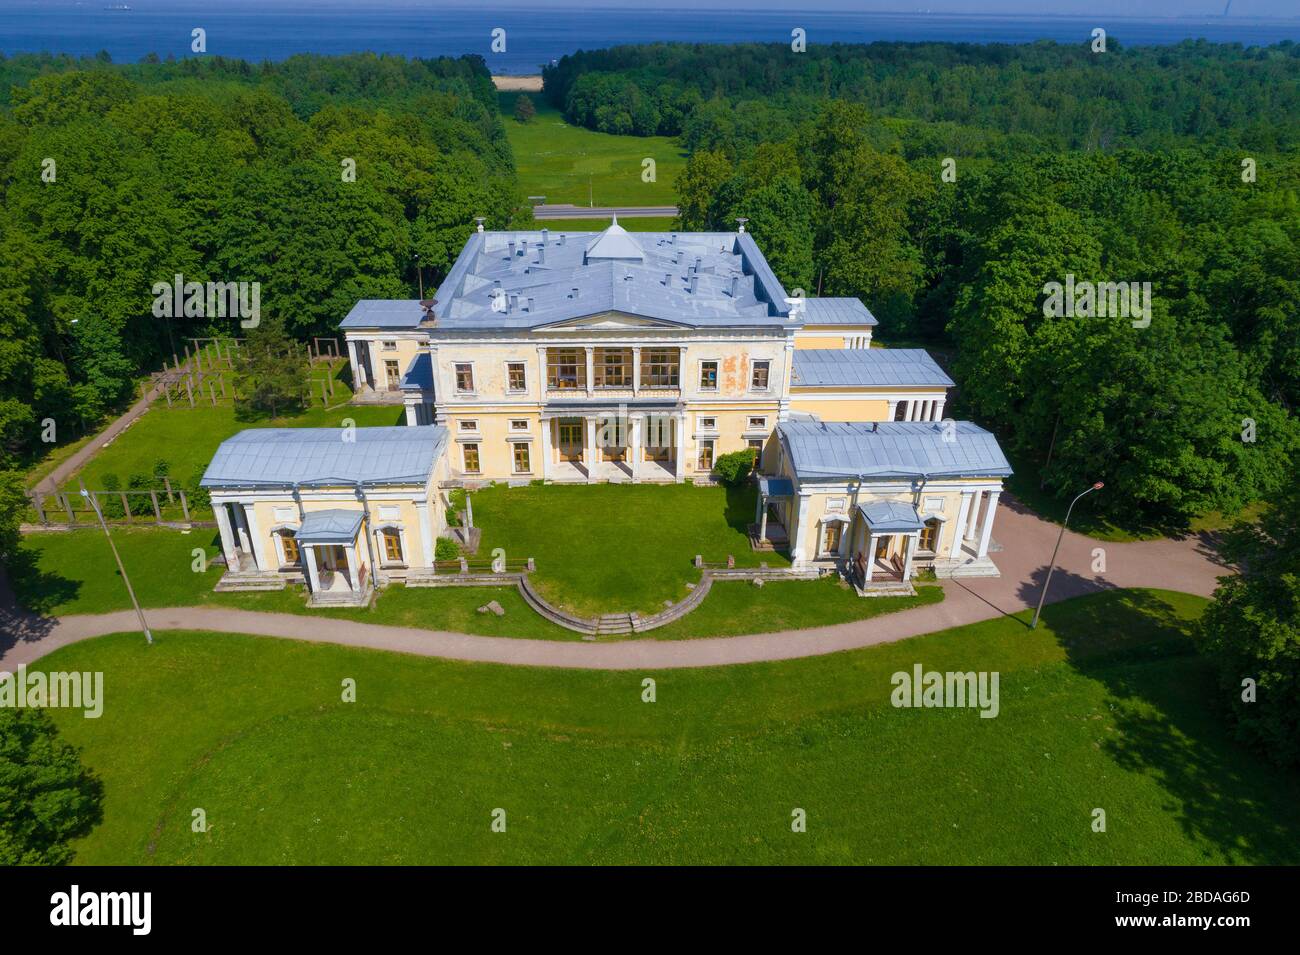 PETERHOF, RUSSIE - JUIN 2019 : vue aérienne de l'ancien palais des ducs de Leuchtenberg le jour ensoleillé de juin. Manoir de Kergievka dans le Vieux Peterhof Banque D'Images